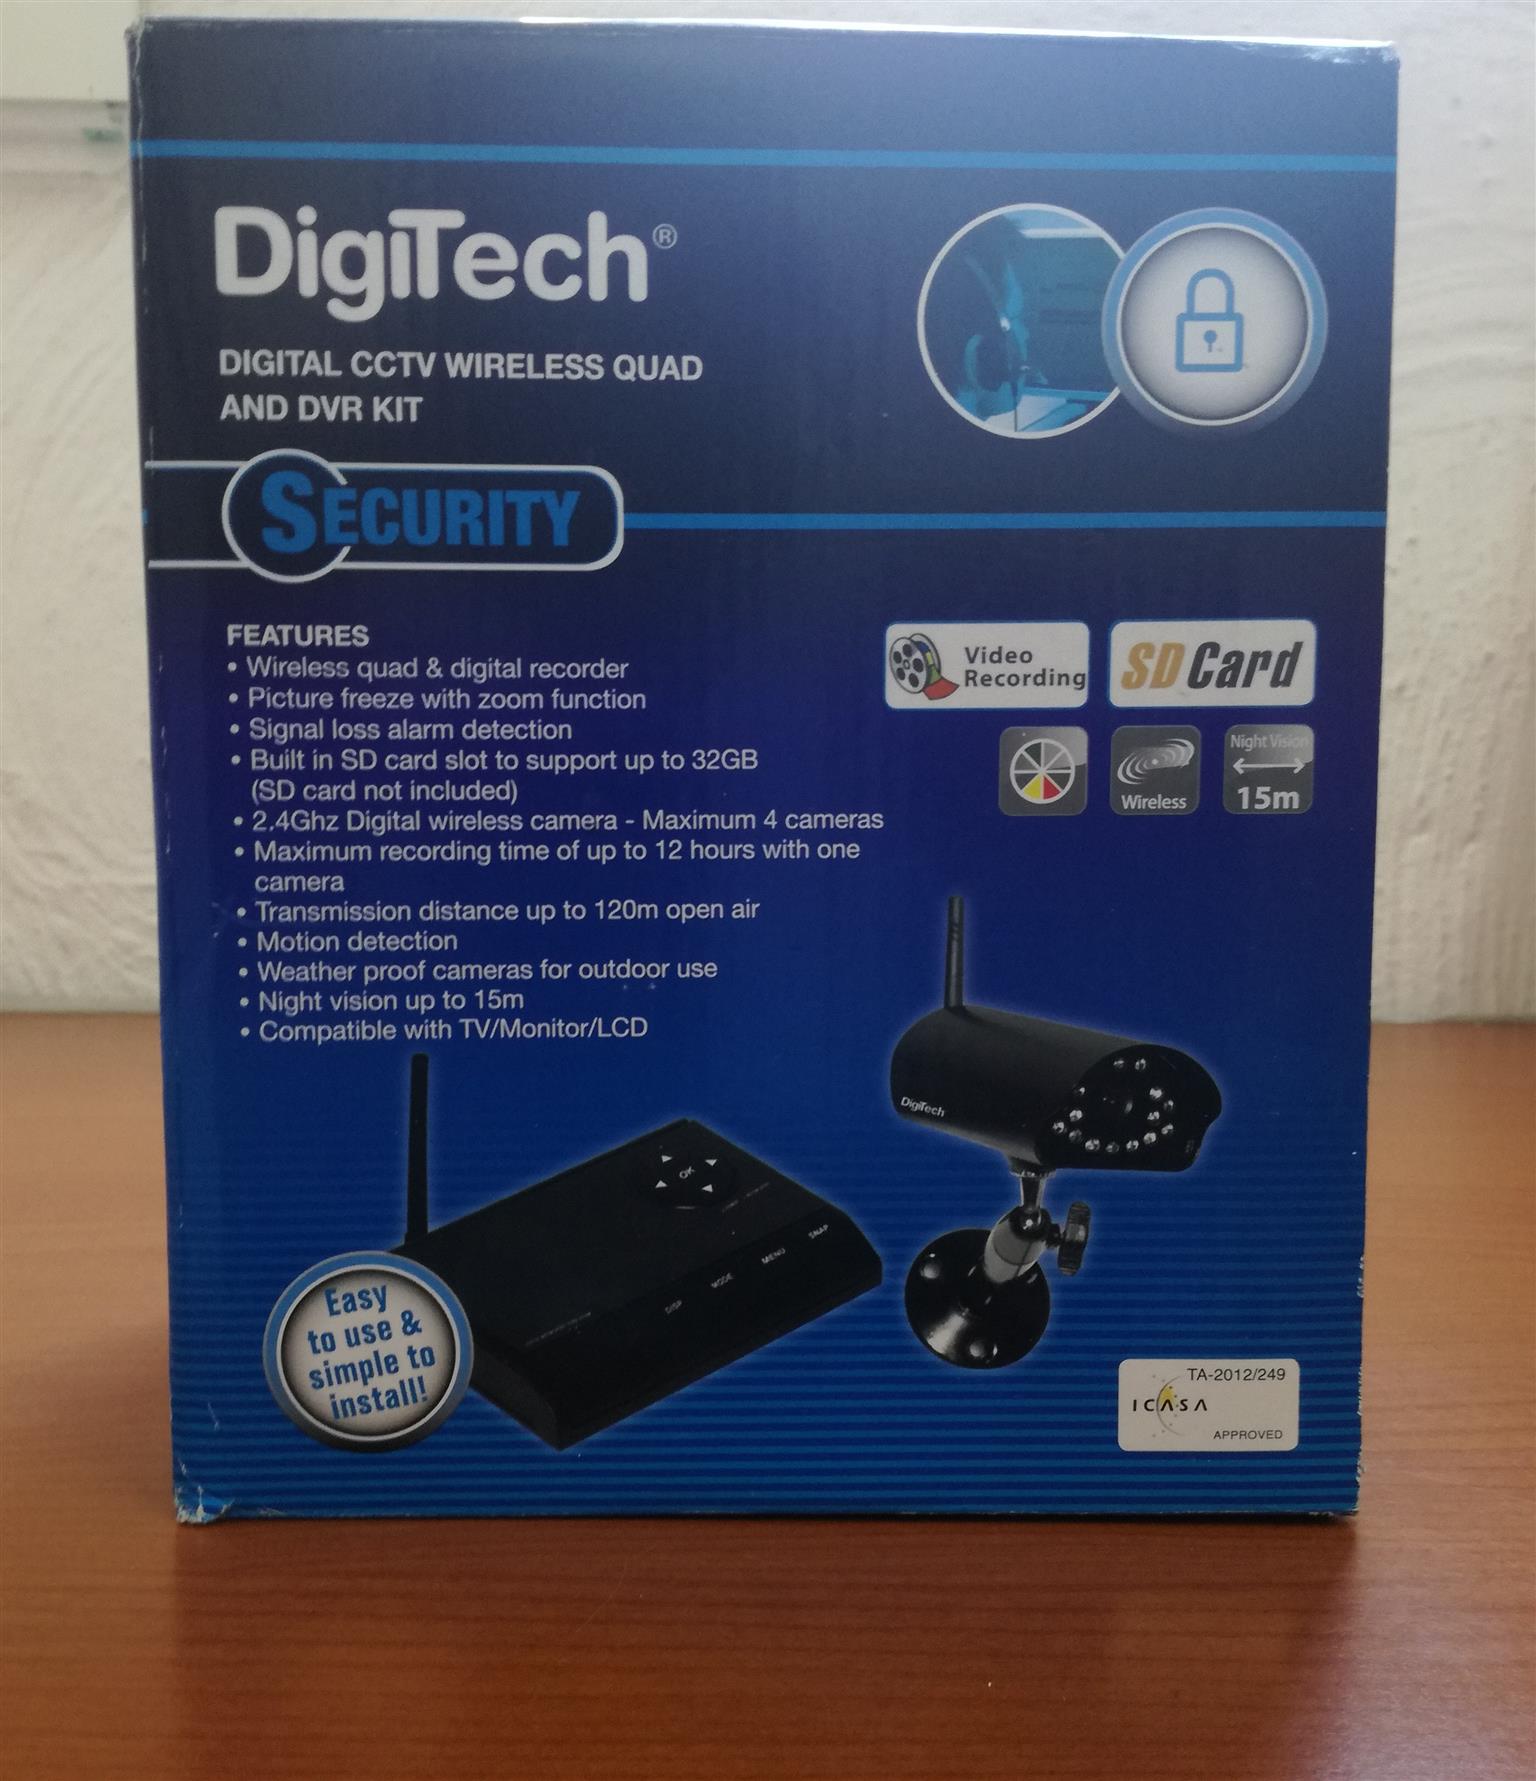 DigiTech Wireless CCTV Surveillance System